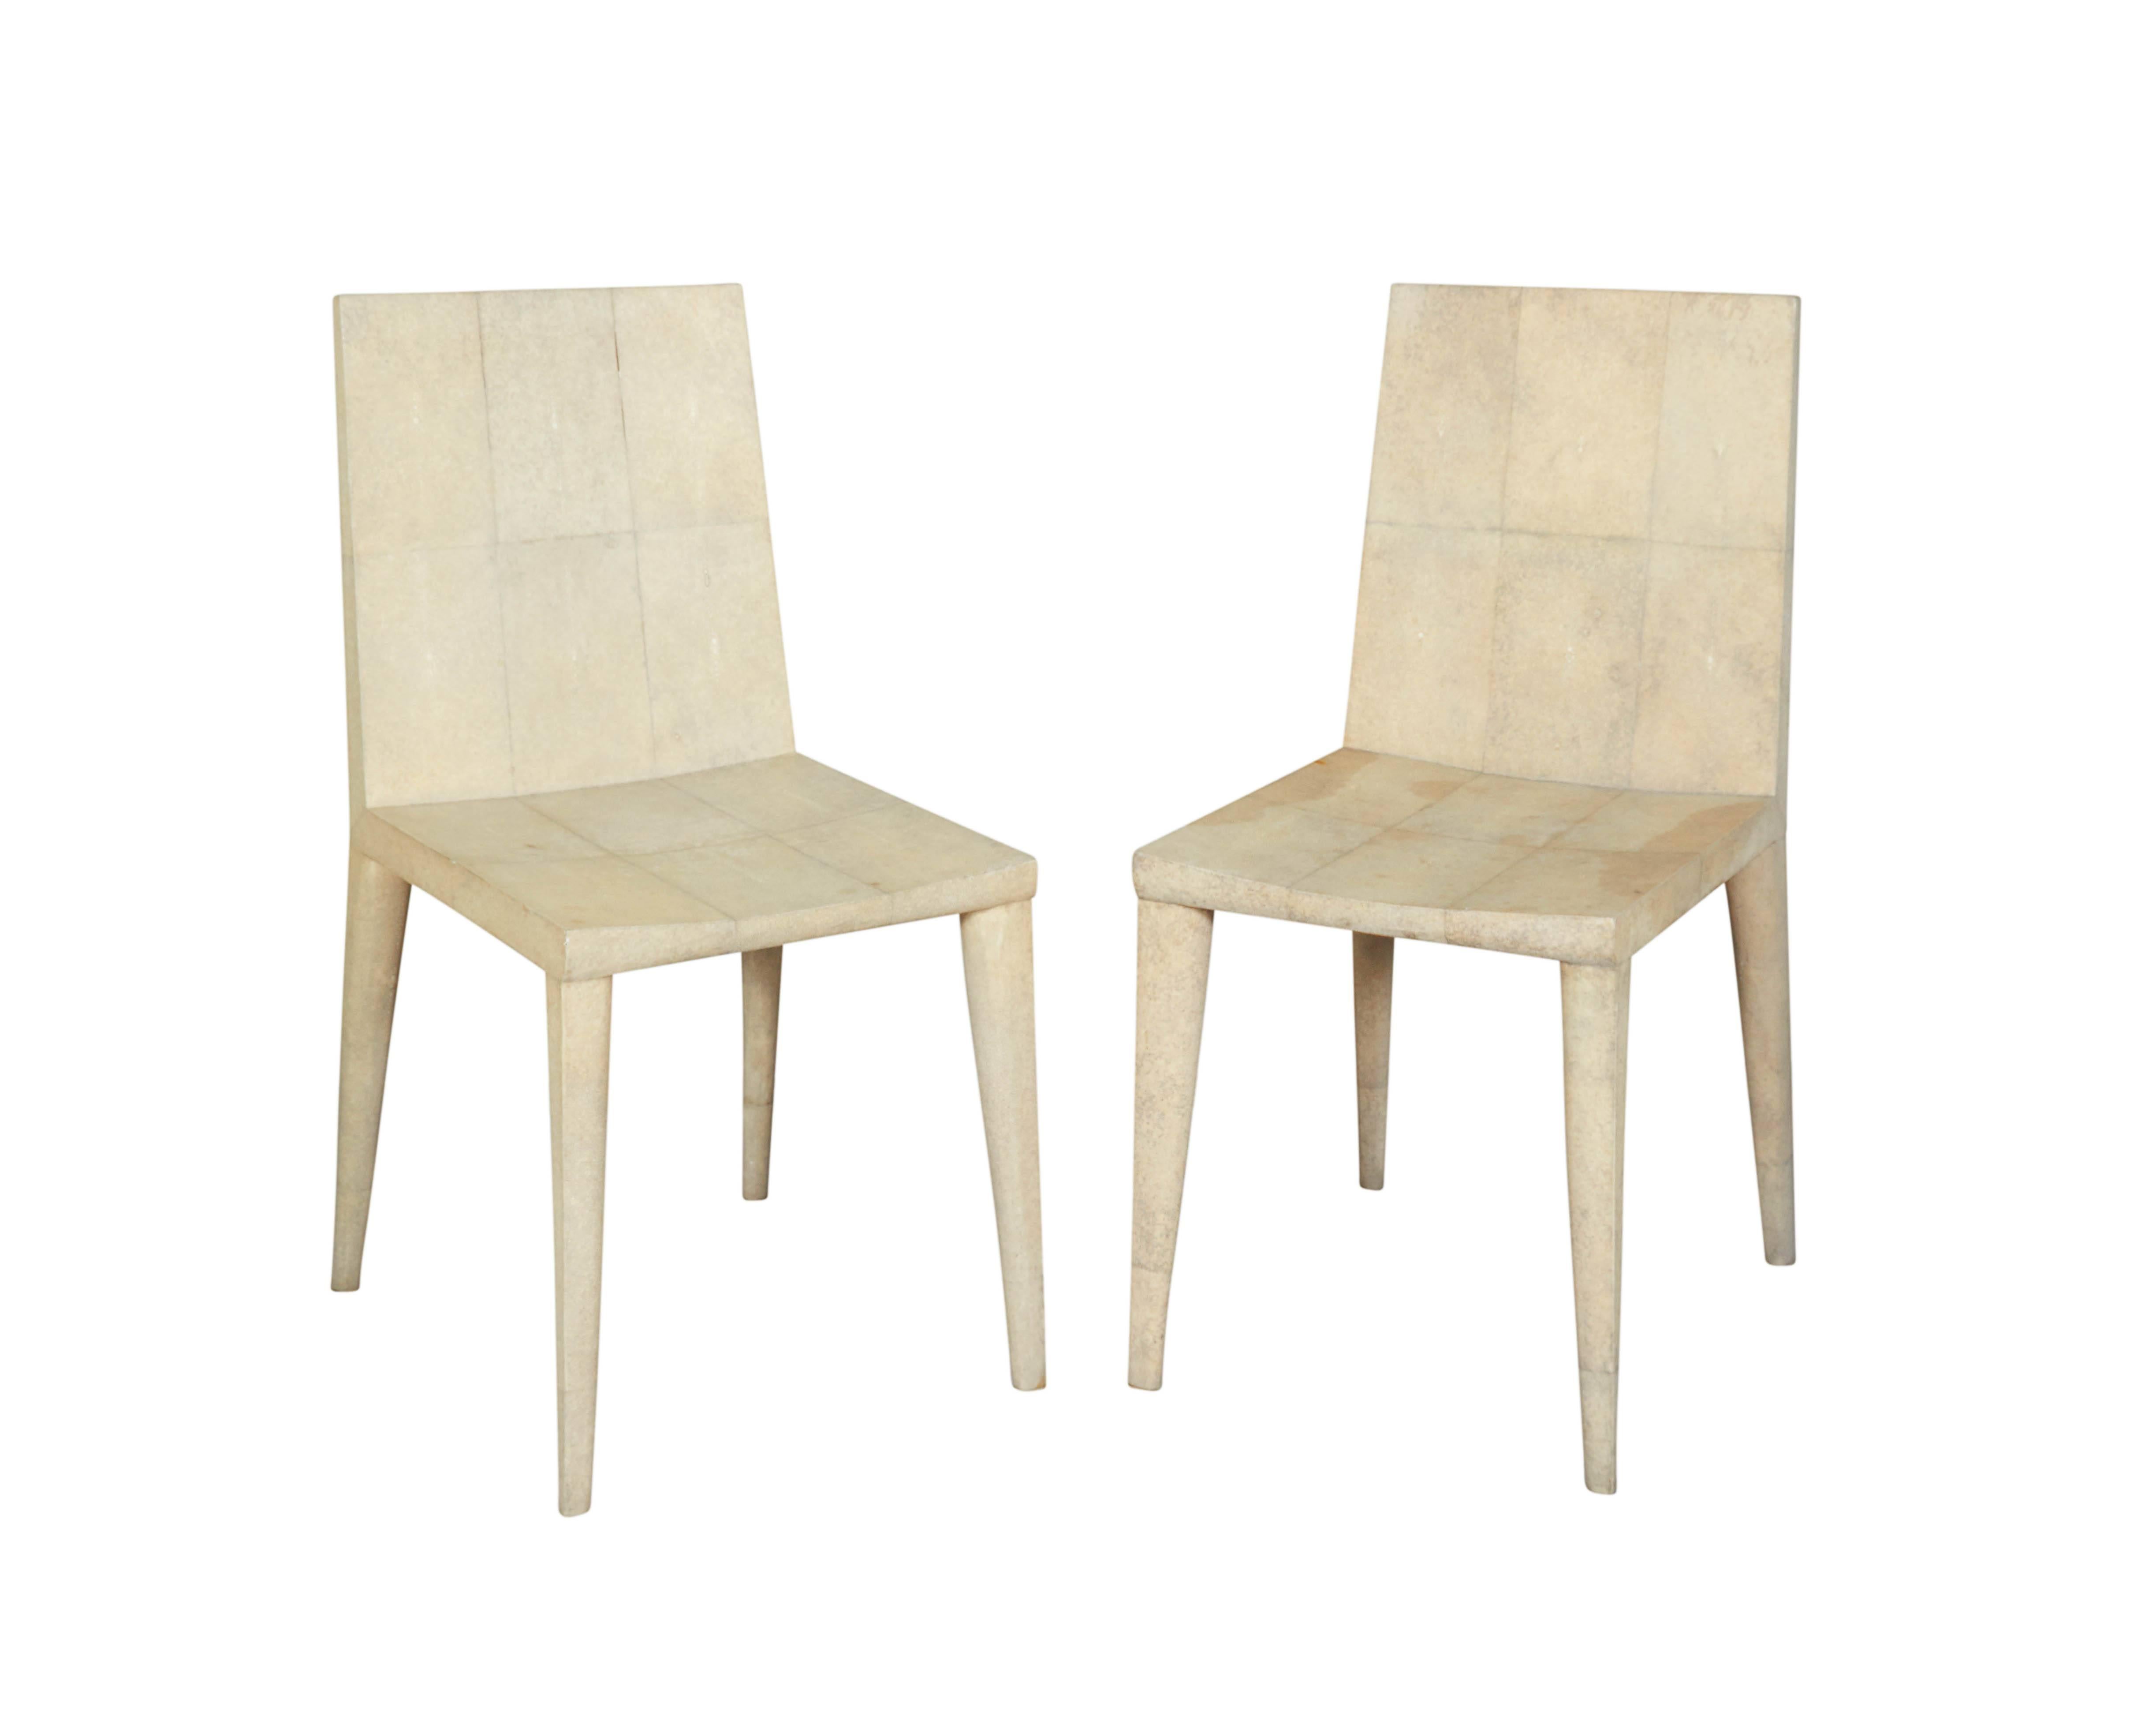 Chaises de style Jean Miche Frank entièrement recouvertes d'un galuchat de couleur naturelle. Ces chaises ont été fabriquées sur mesure par R&Y Augousti de France.